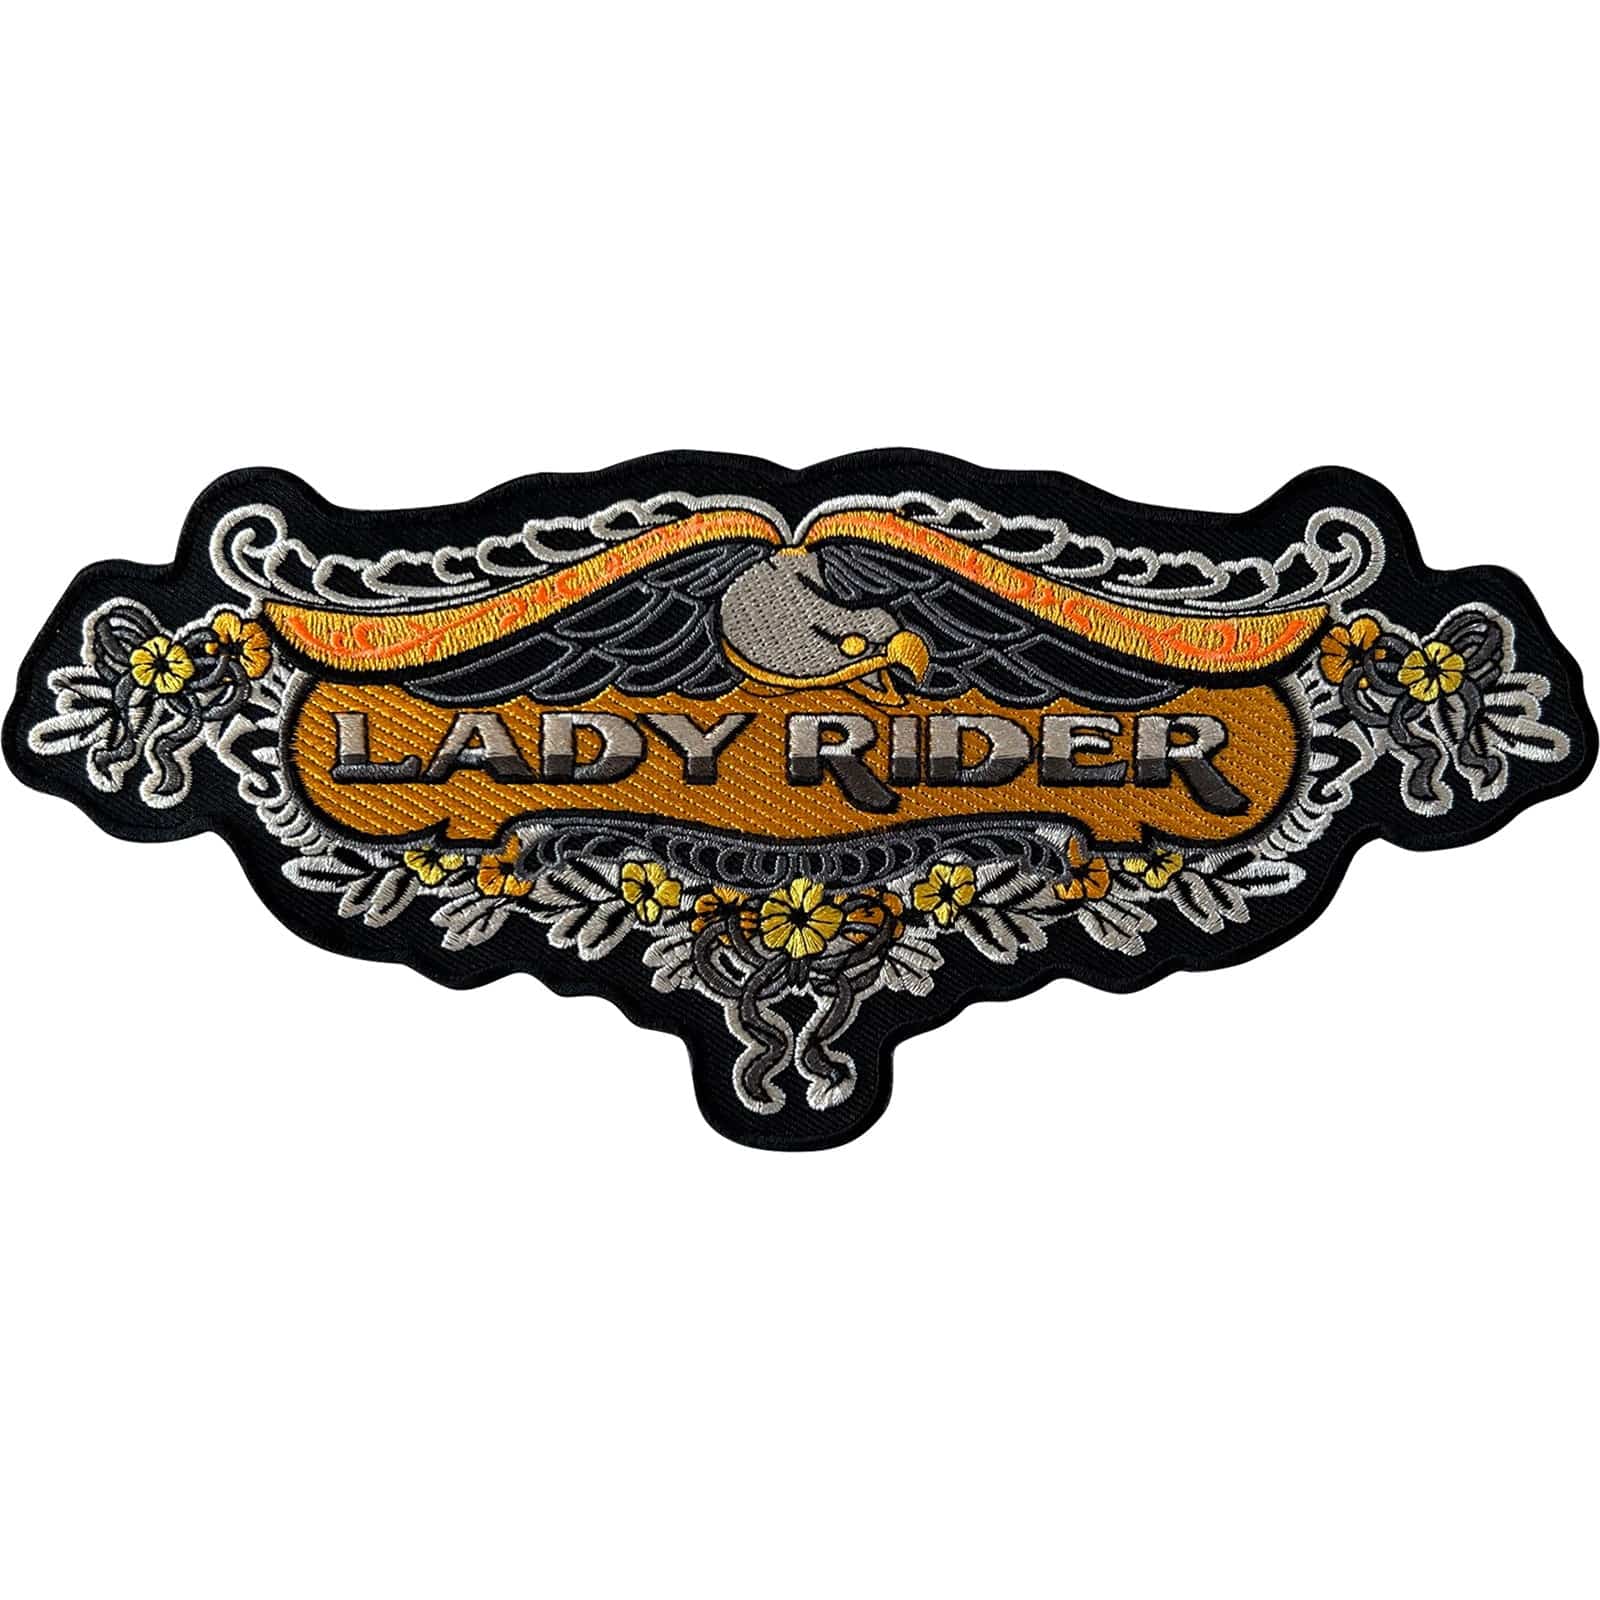 Big Large Lady Rider Iron Sew On Patch Womens Ladies Motorbike Jacket Coat Badge